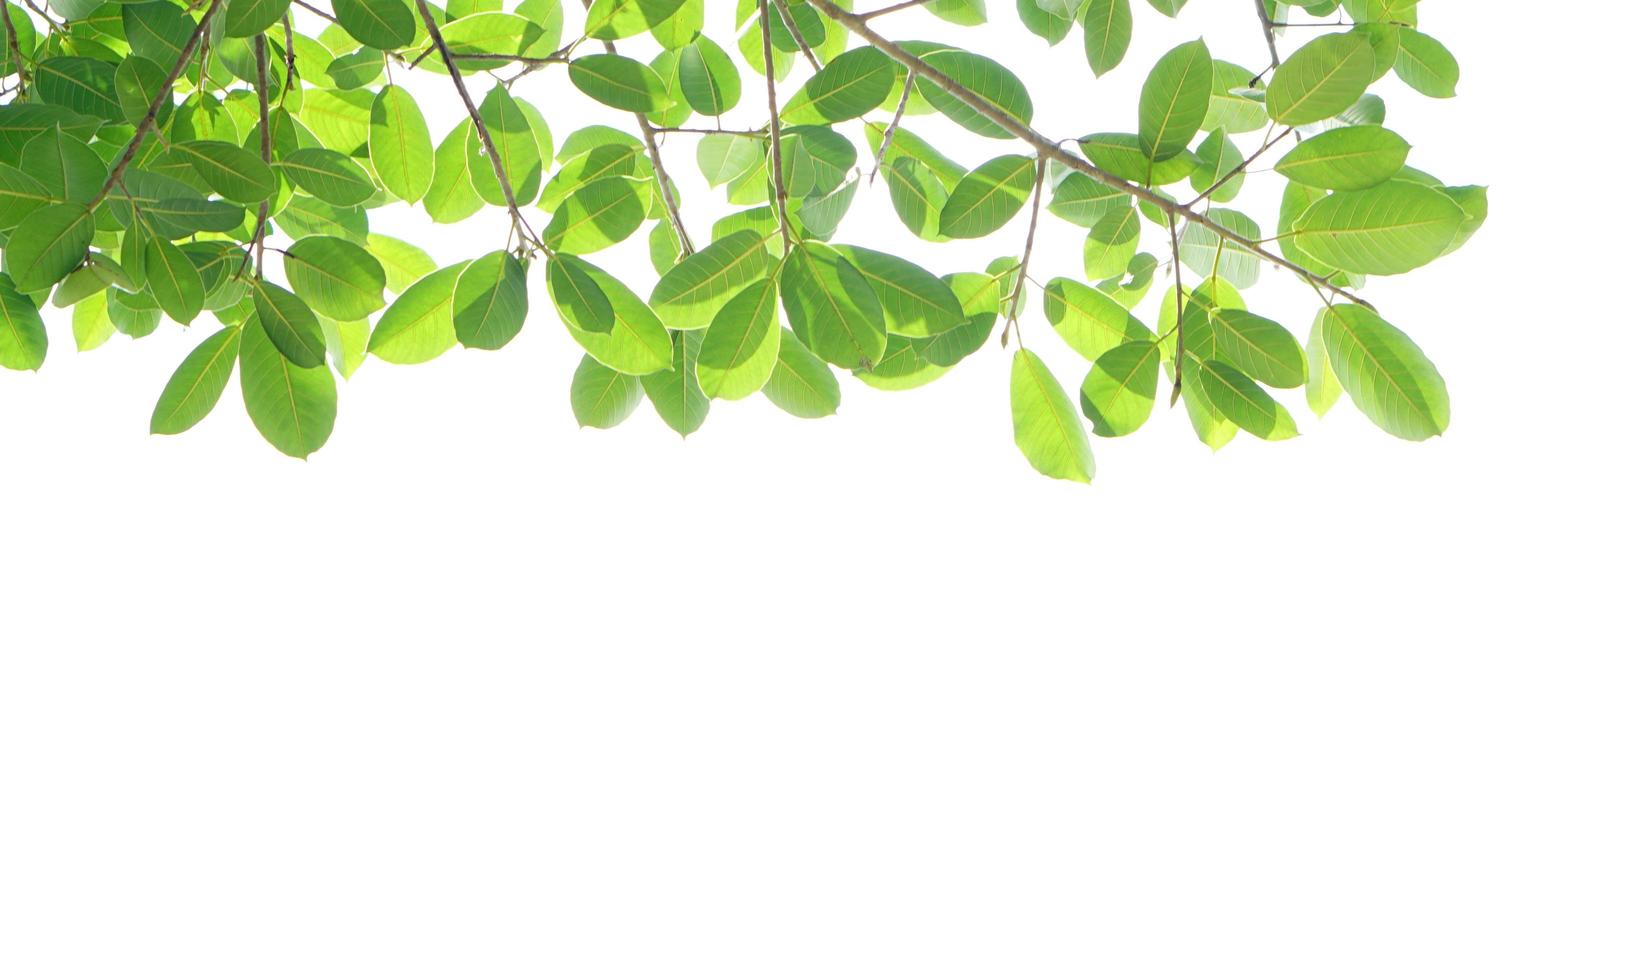 giornata mondiale dell'ambiente foglie verdi su sfondo bianco foto